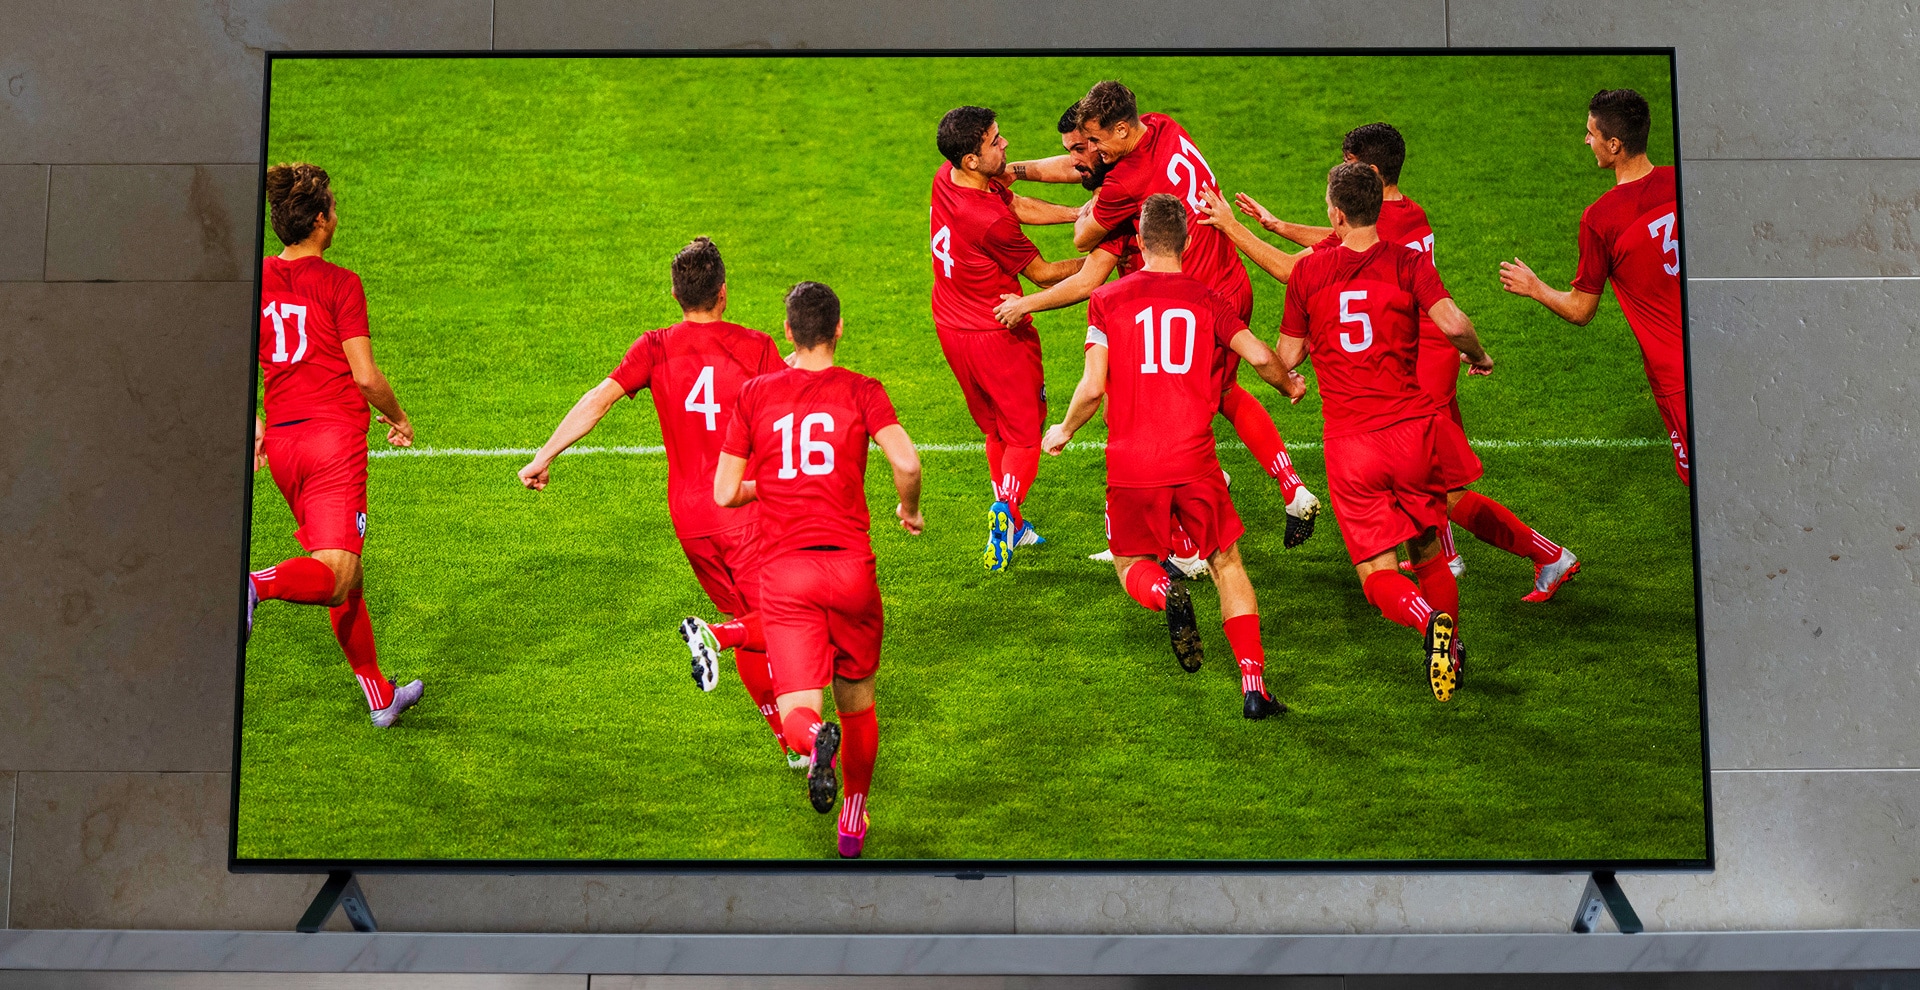 TV NanoCell trên chân đỡ TV. Các cầu thủ bóng đá đang ăn mừng.